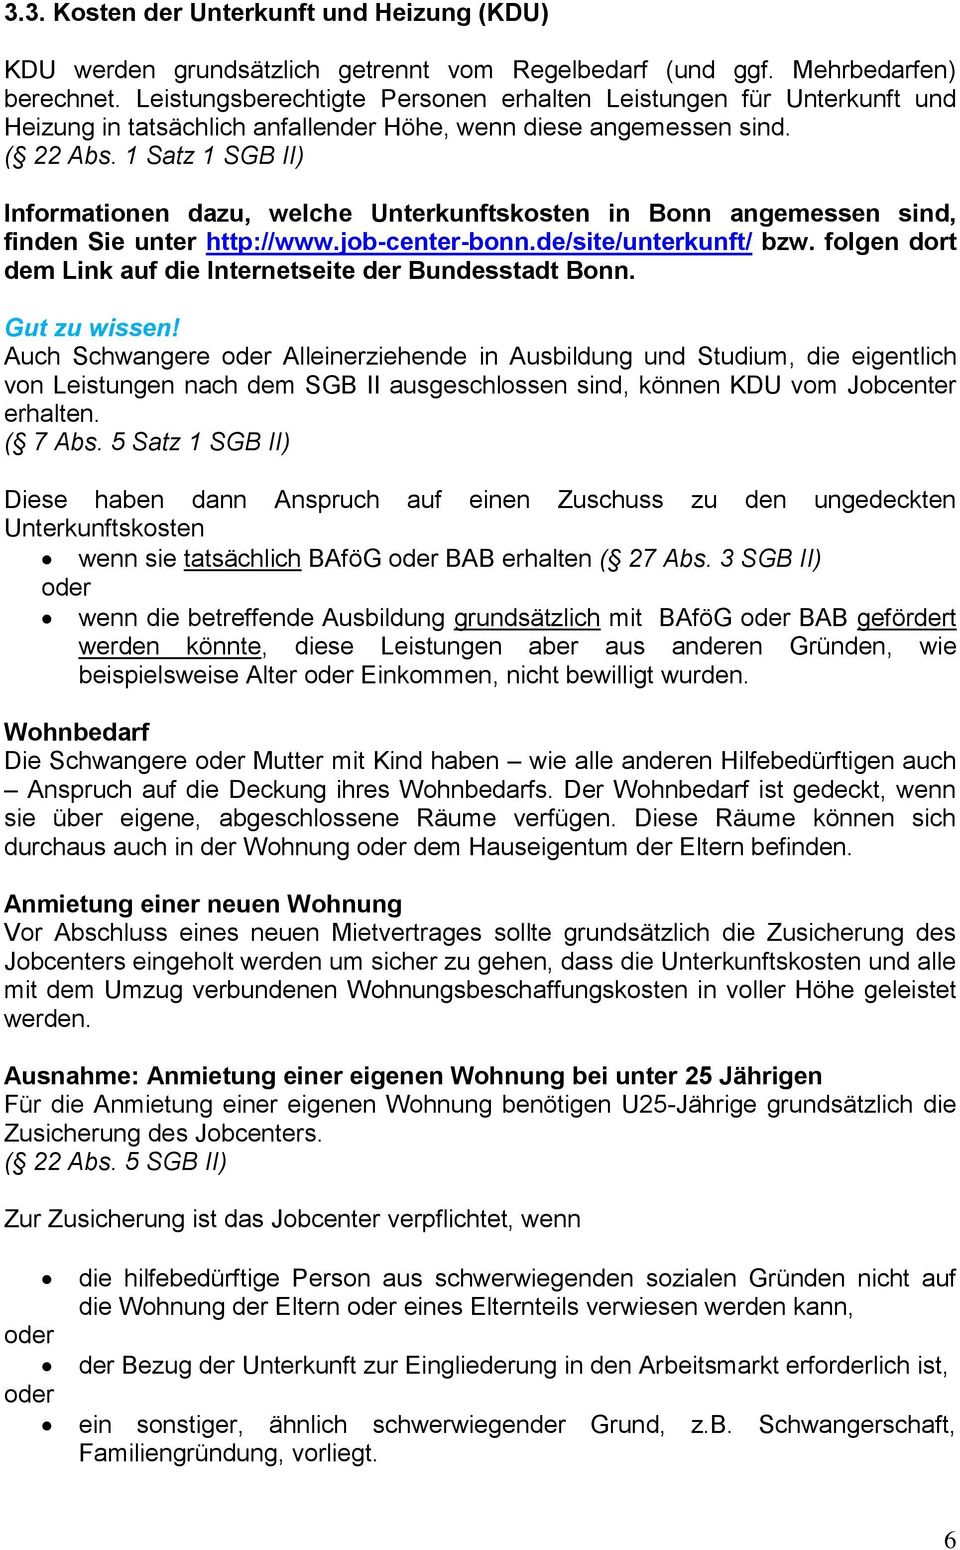 1 Satz 1 SGB II) Informationen dazu, welche Unterkunftskosten in Bonn angemessen sind, finden Sie unter http://www.job-center-bonn.de/site/unterkunft/ bzw.